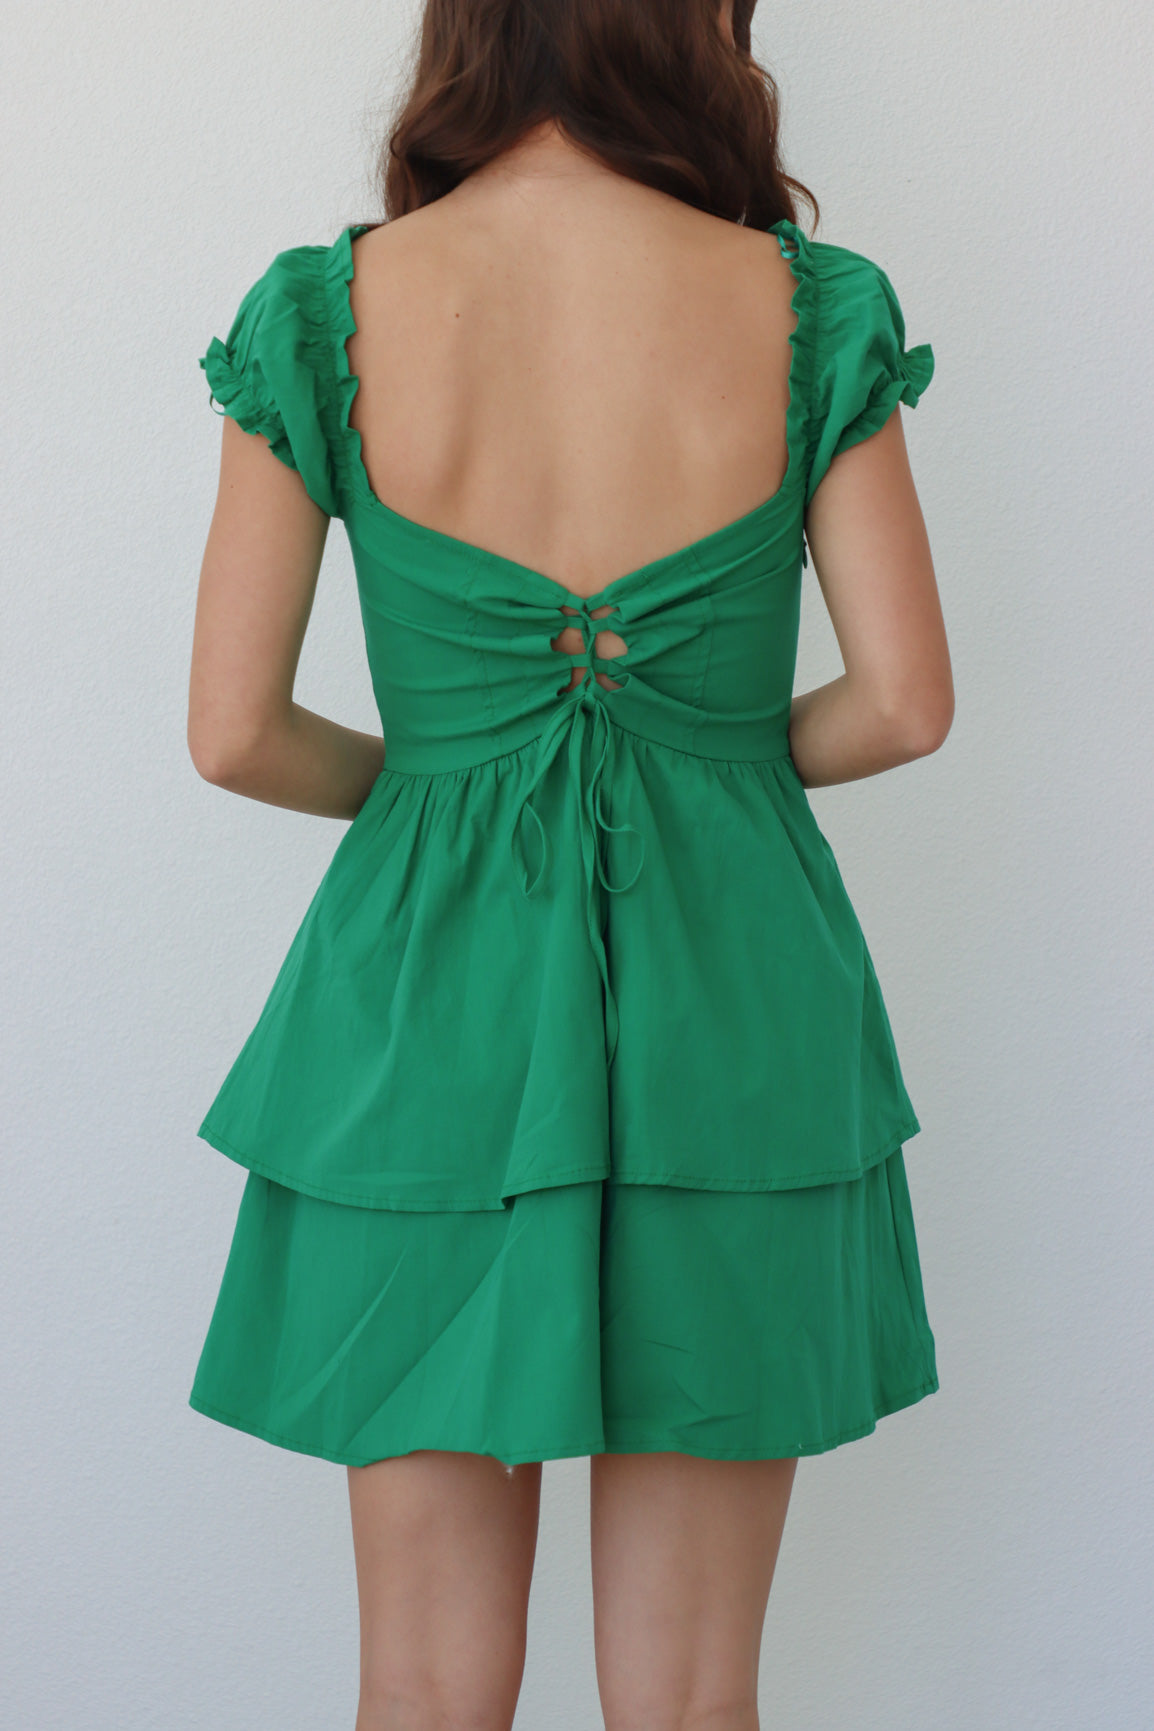 girl wearing emerald green short dress